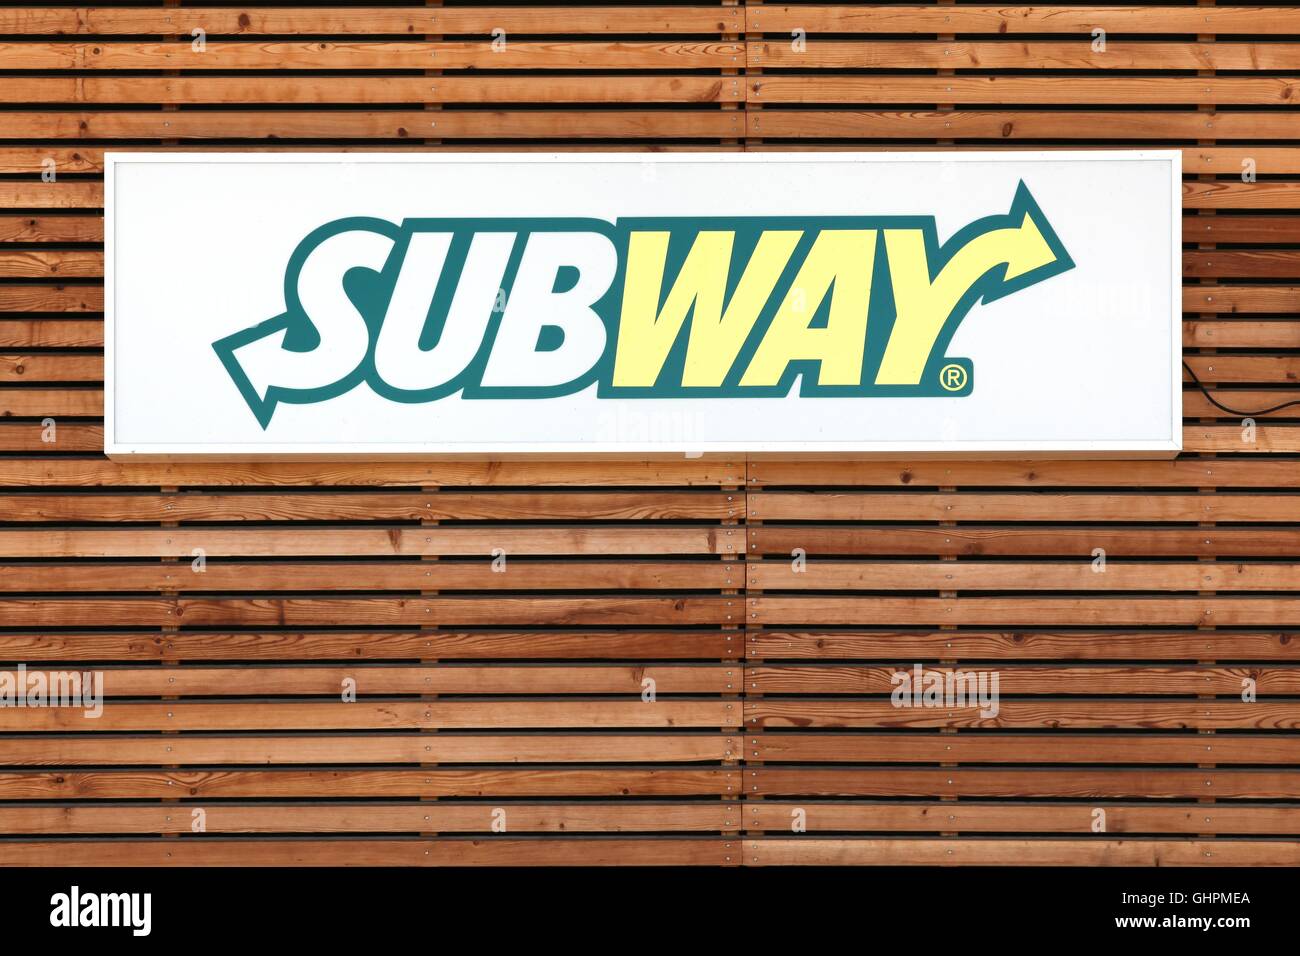 Subway logo on a facade Stock Photo